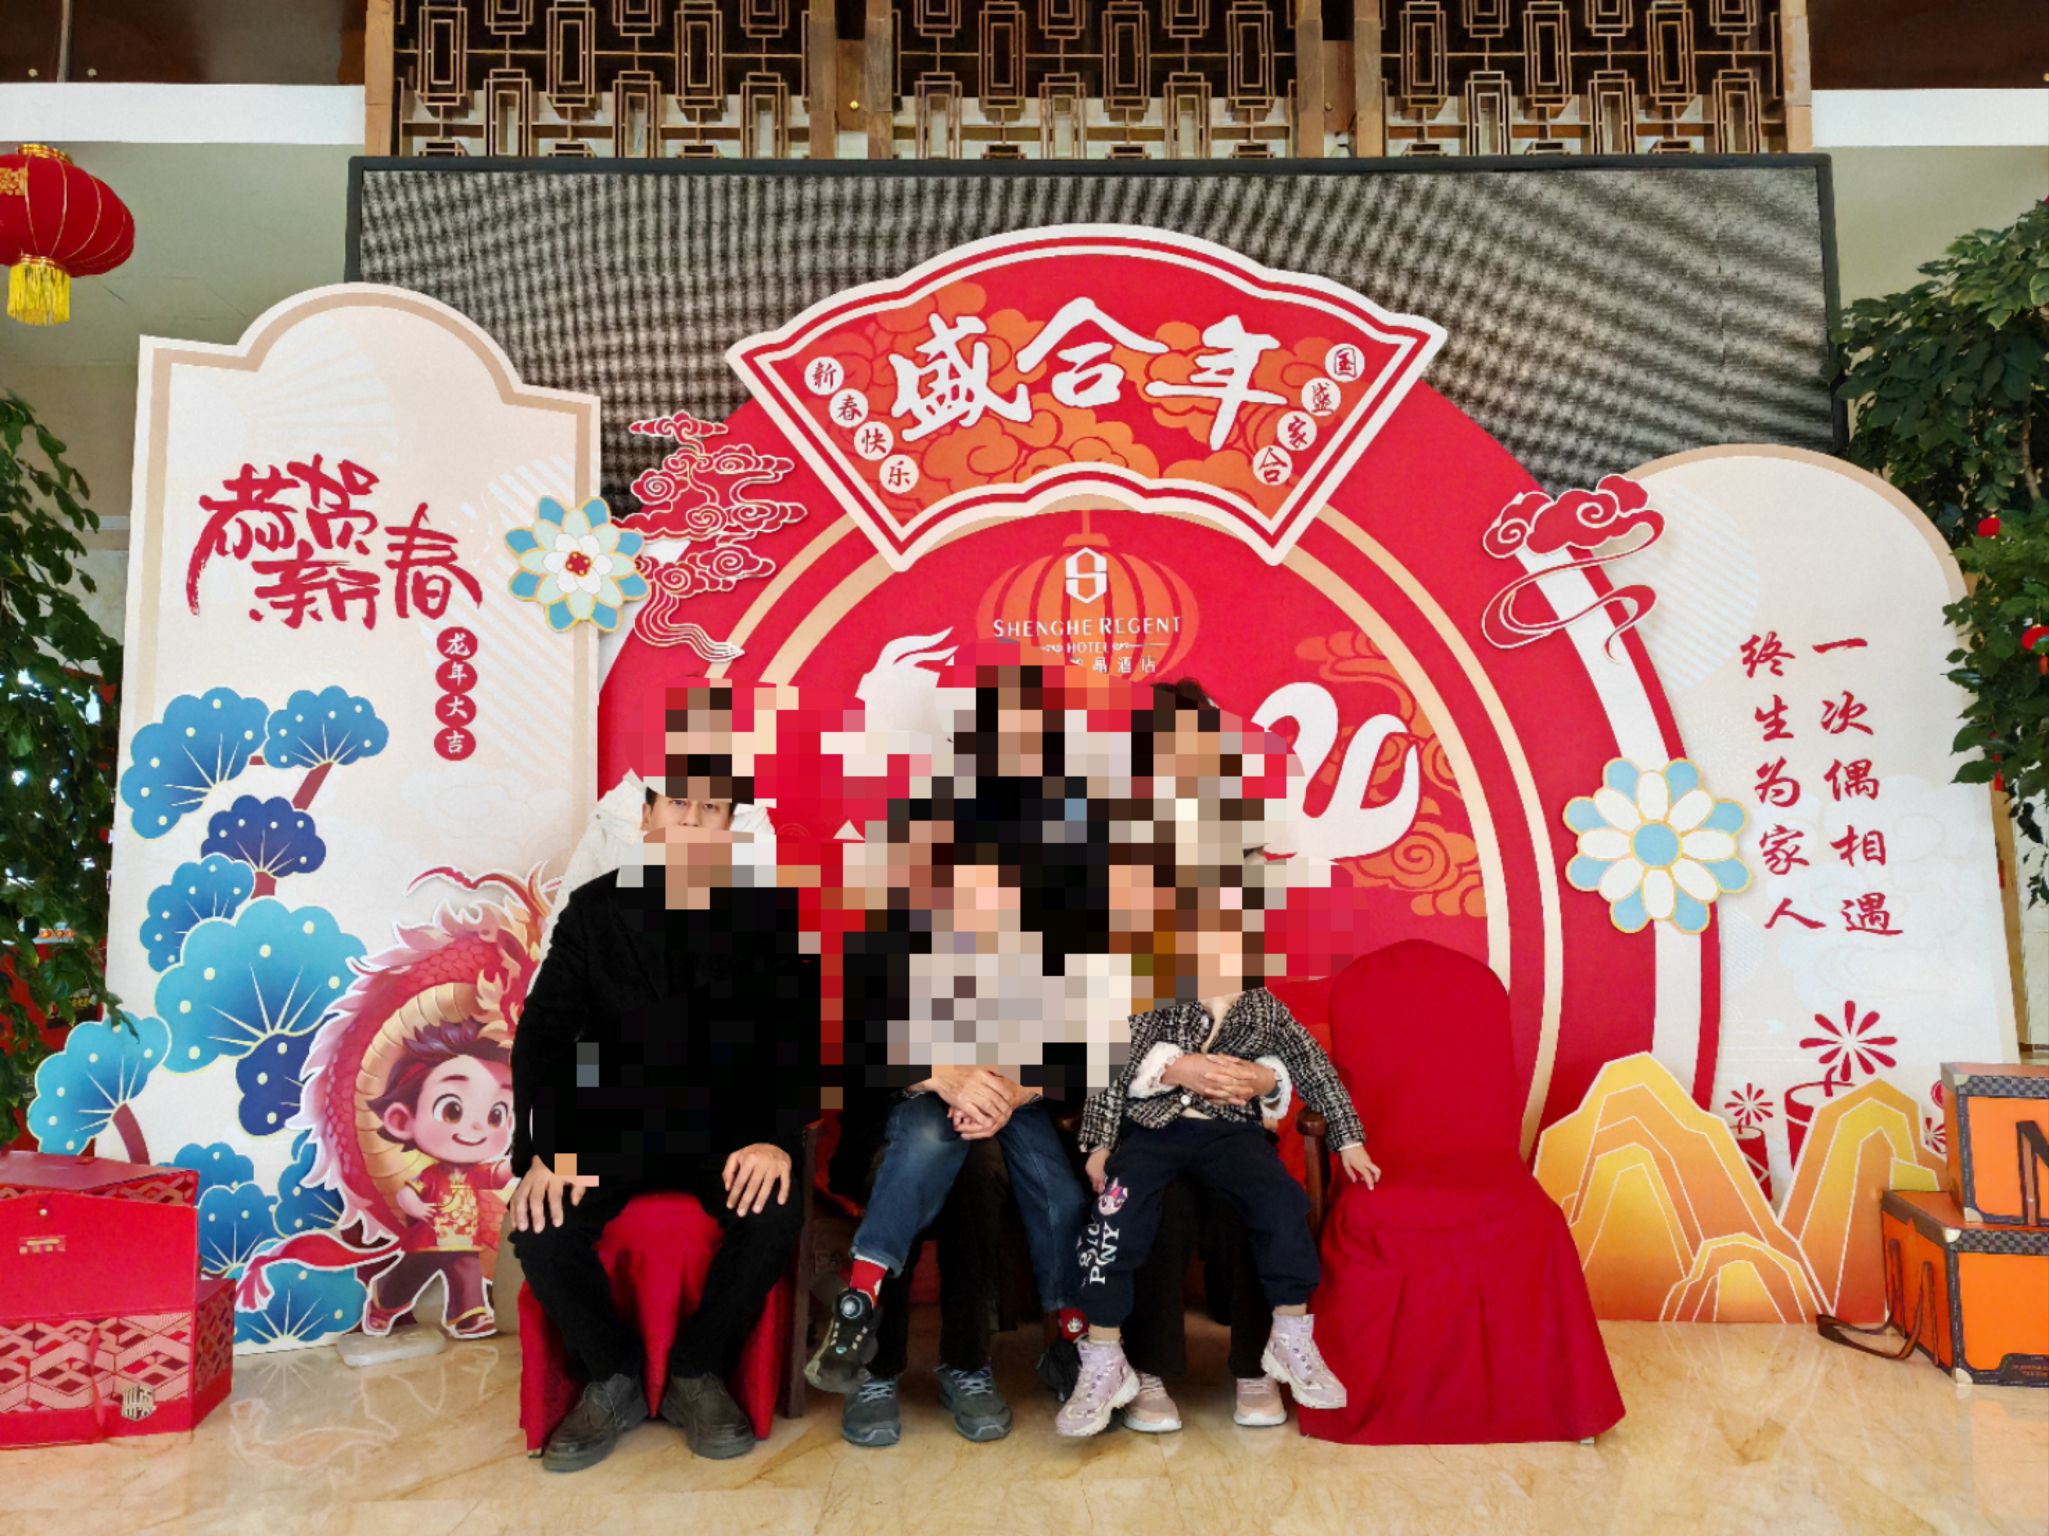 非常满意的一次出行，带老人孩子一起出行，主要是游览曹魏古城，节假日，许昌市的酒店都满员了，临时选择的